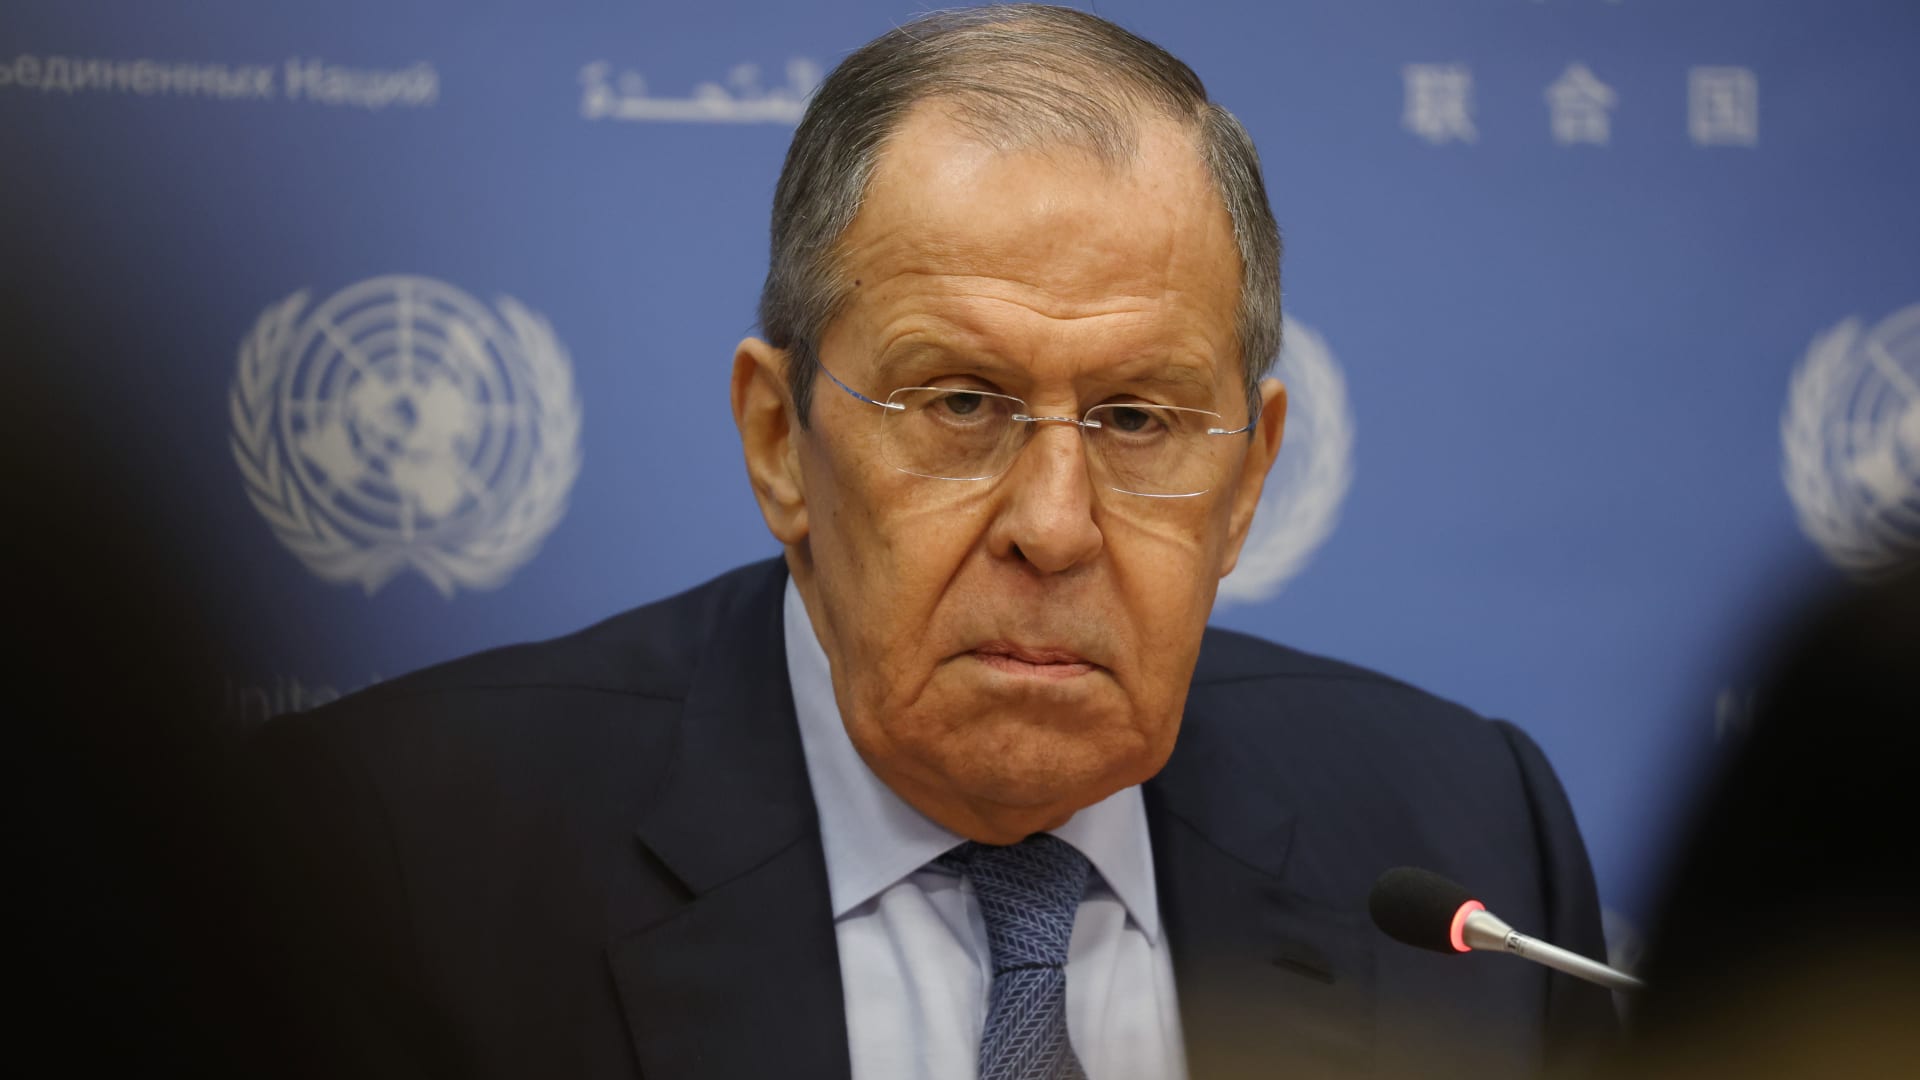 وزير خارجية روسيا يُعلق على هجوم "الدرونز" المزعوم على الكرملين وطريقة رد موسكو